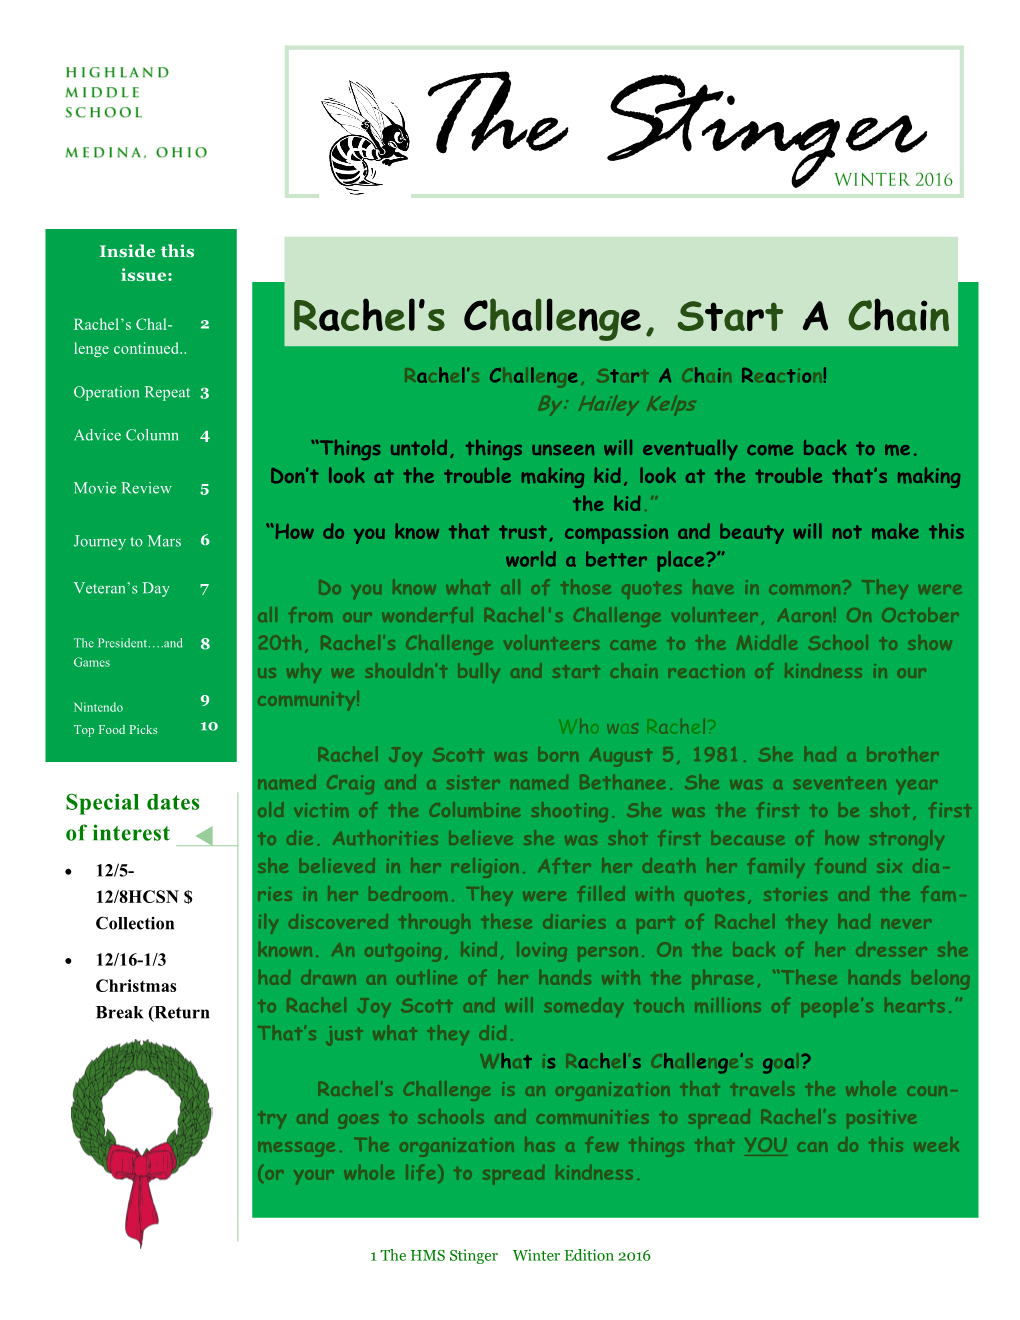 Rachel's Challenge, Start a Chain